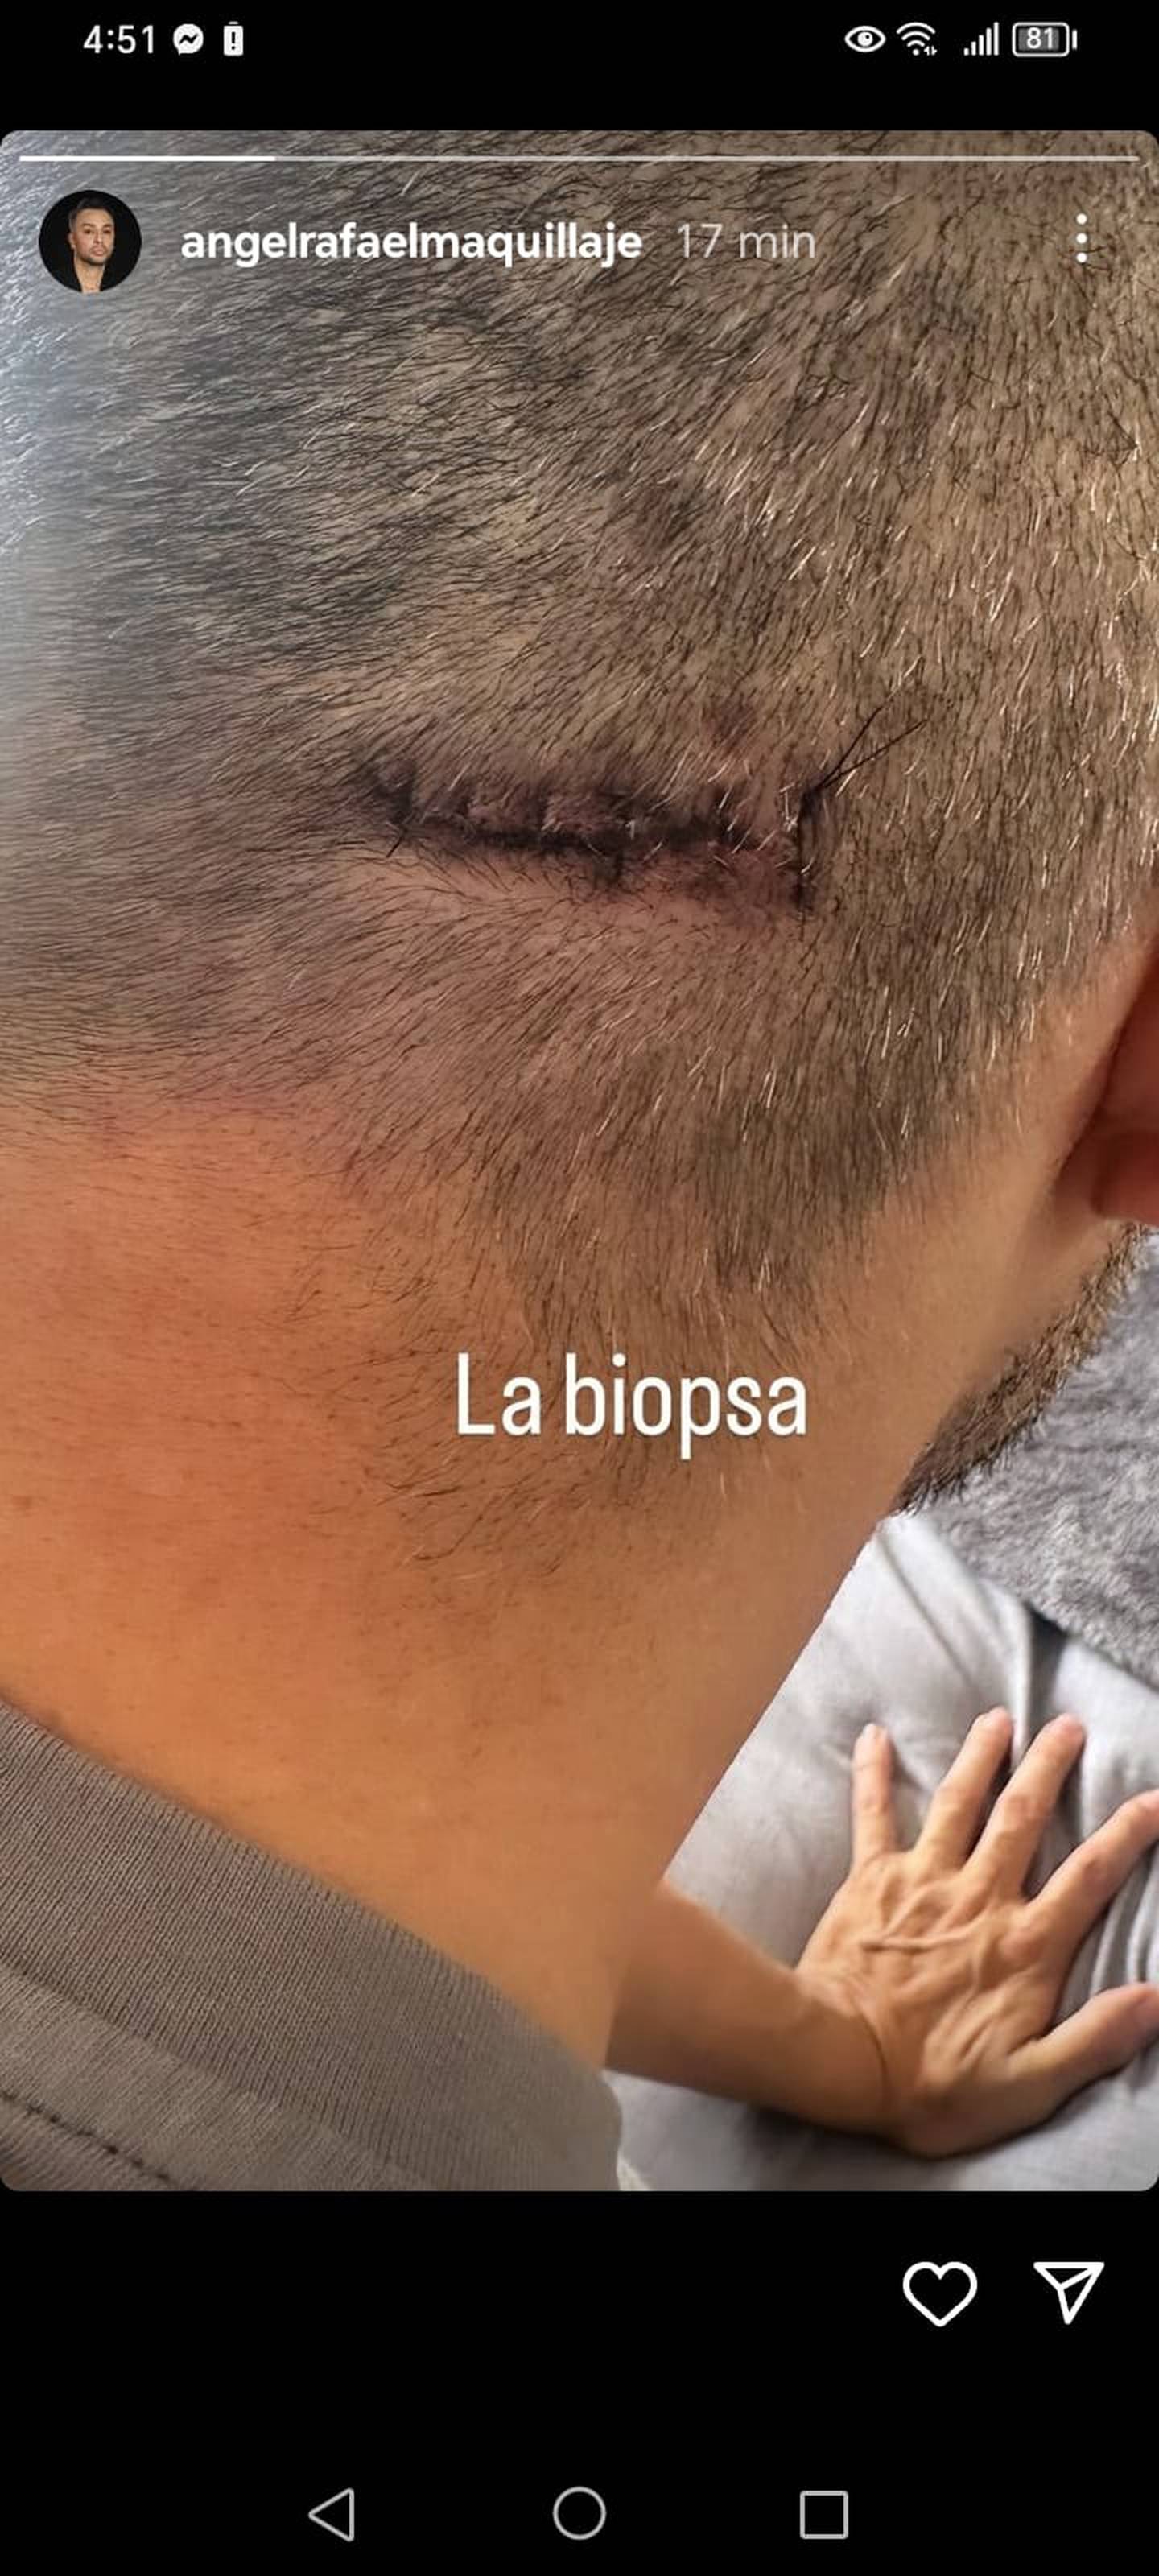 Hace pocos minutos, este Jueves Santo, el exmaquillista de Teletica, Ángel Rafael, mostró la cicatriz de la biopsia en el cerebro que le hicieron como parte del proceso que debe llevar tras ser diagnosticado con un tumor cerebral.